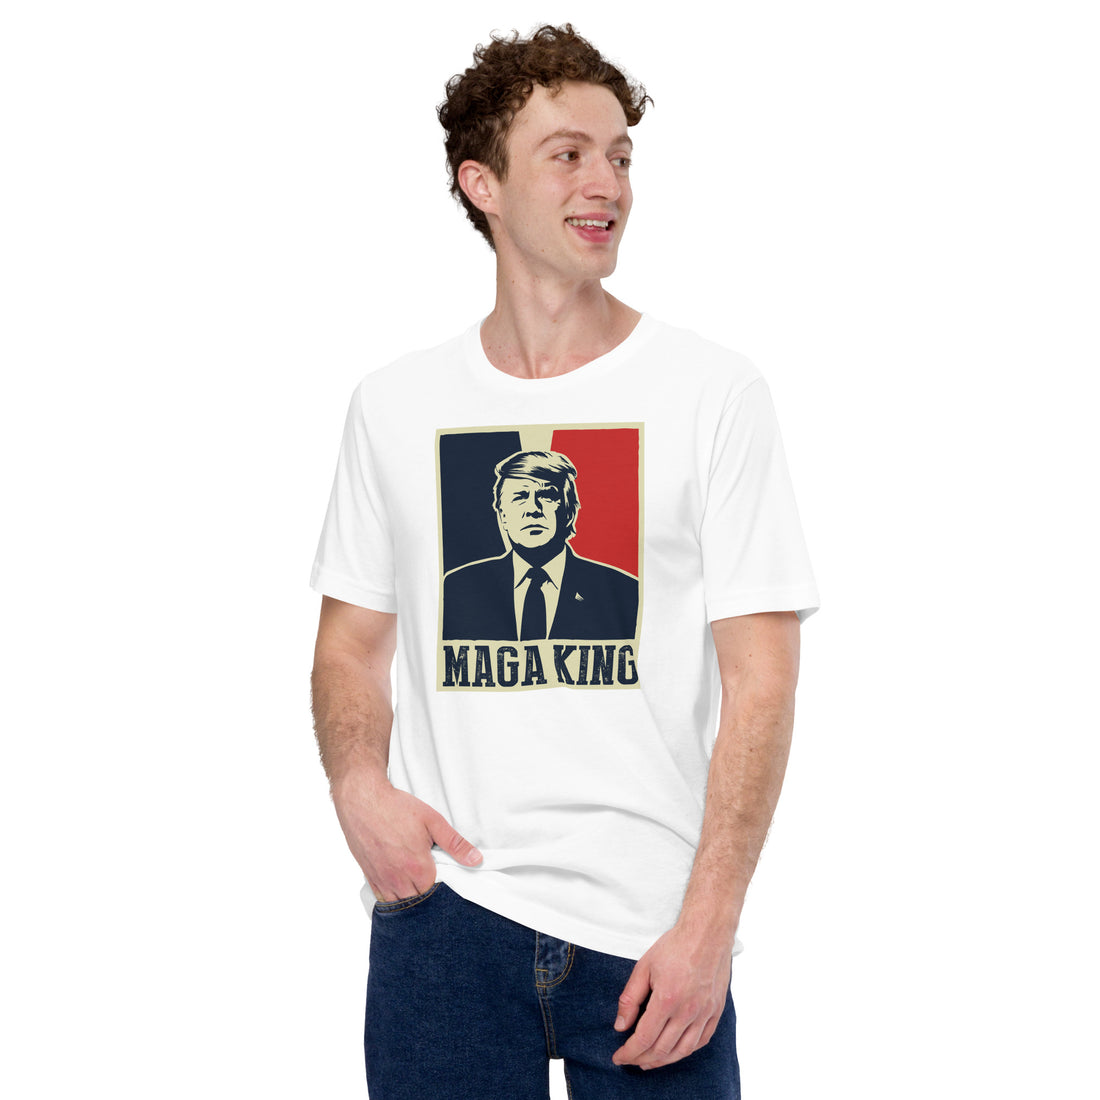 The MAGA King t-shirt